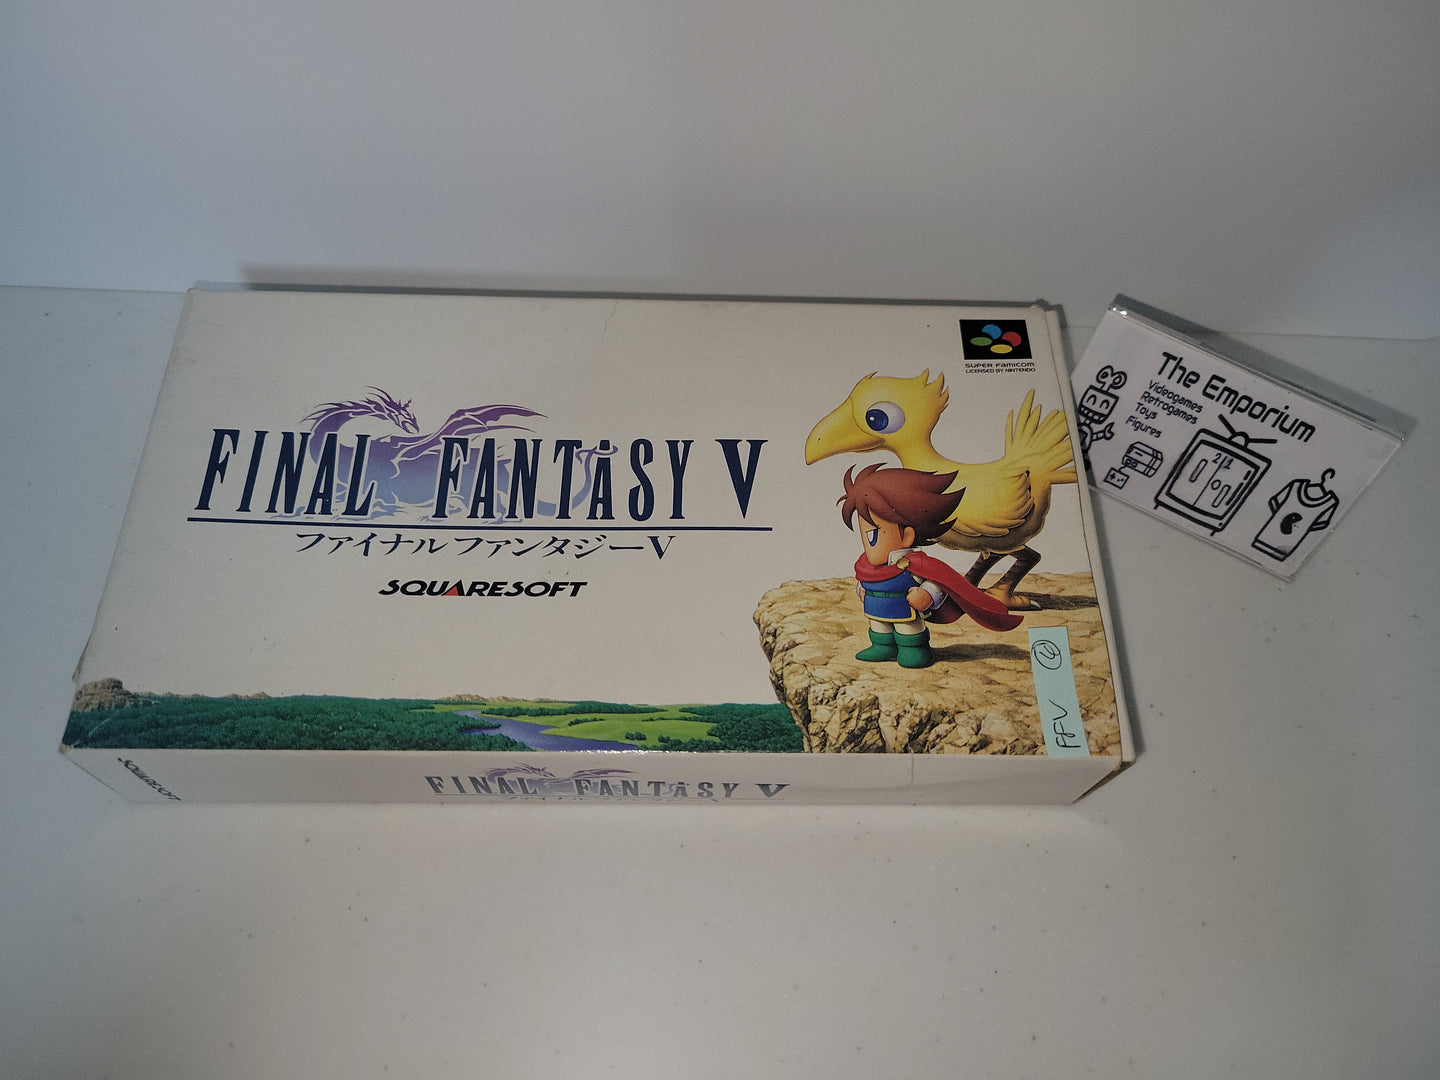 Final Fantasy V - Nintendo Sfc Super Famicom